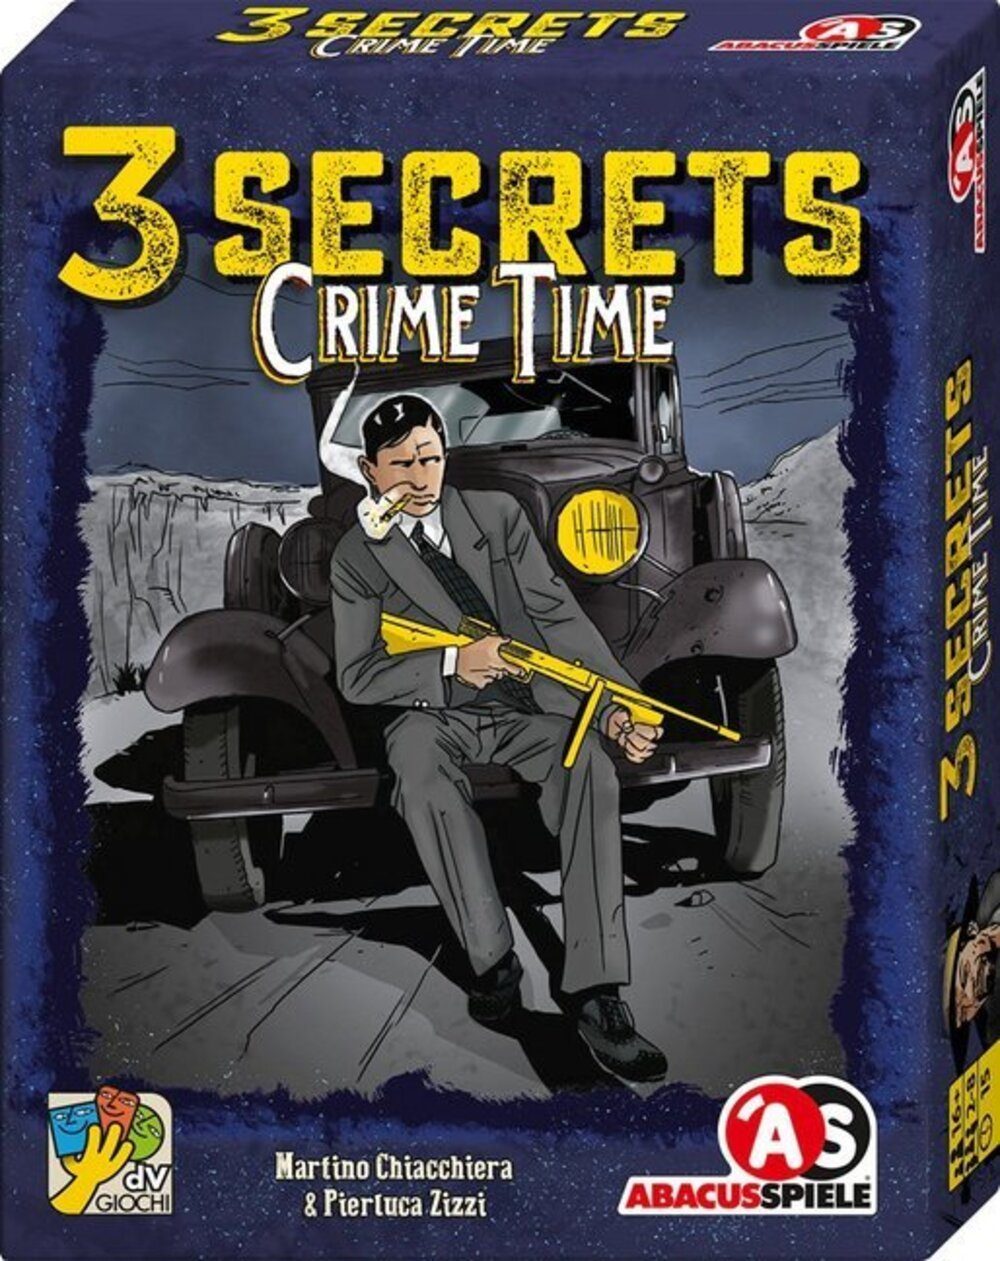 ABACUSSPIELE Spiel, 3 Secrets - Crime Time